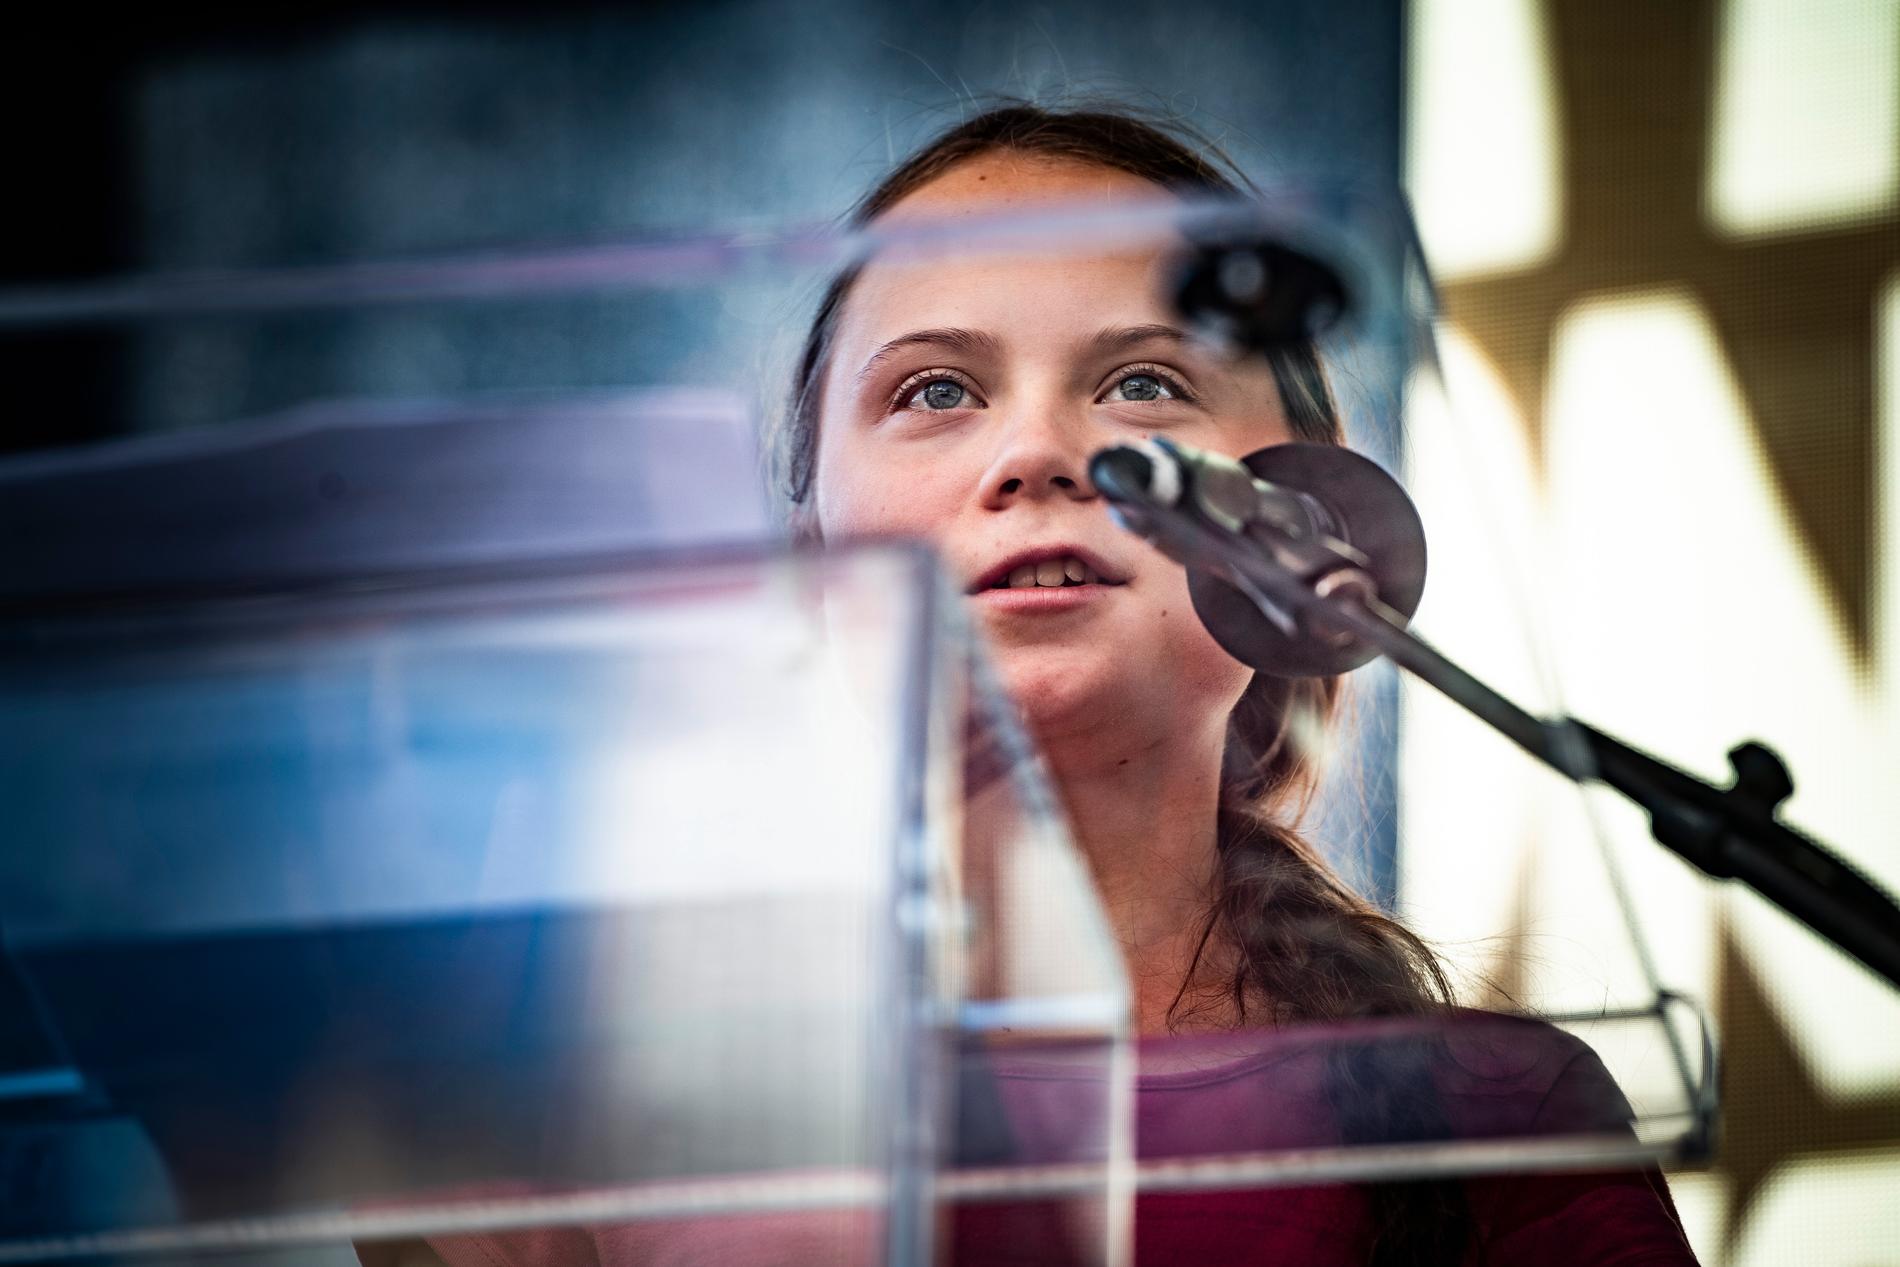 ”Vi ska se till att makthavarna hör oss”, sa Greta Thunberg till publiken i Battery park, New York. 